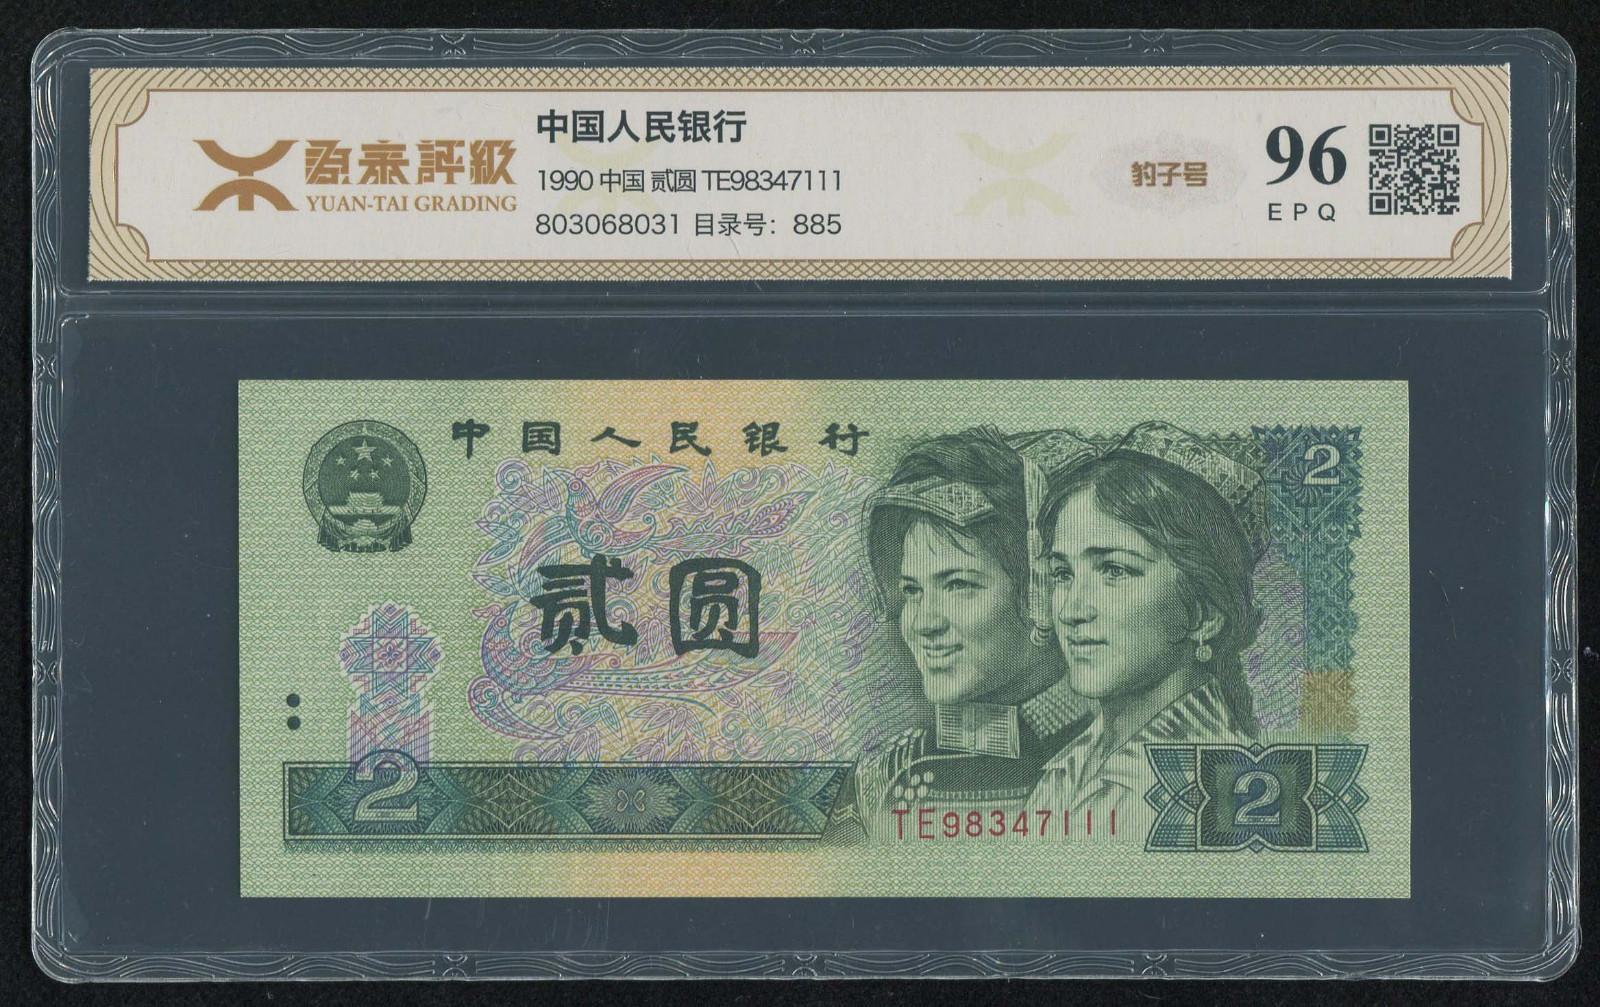 第四套/第四版人民币1990年版2元一枚(豹子号,te98347111,源泰 96epq)